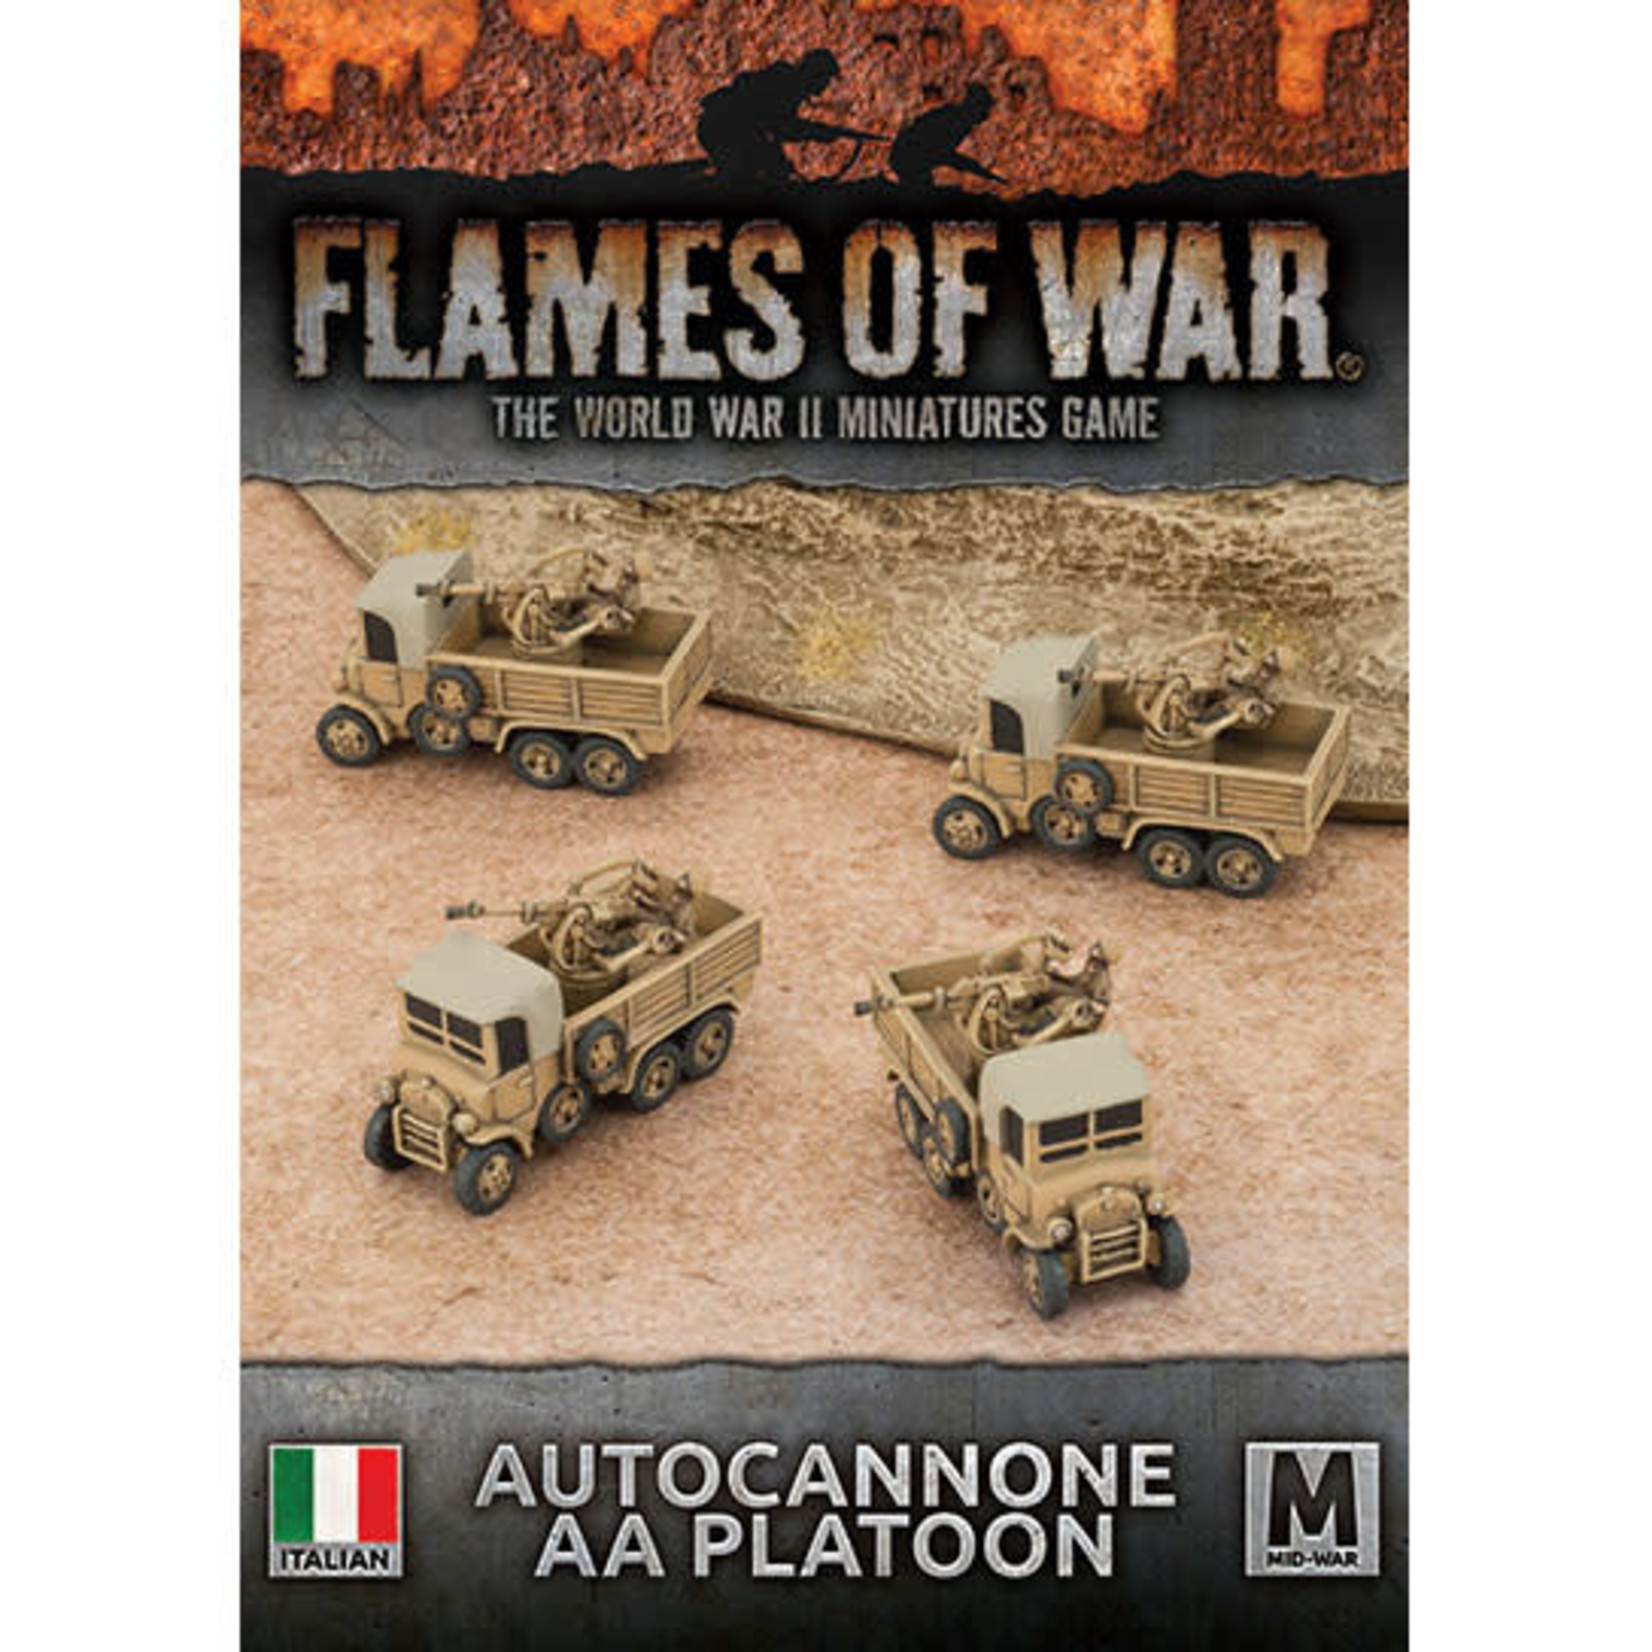 Battlefront Miniatures Autocannone AA Platoon (Italian)